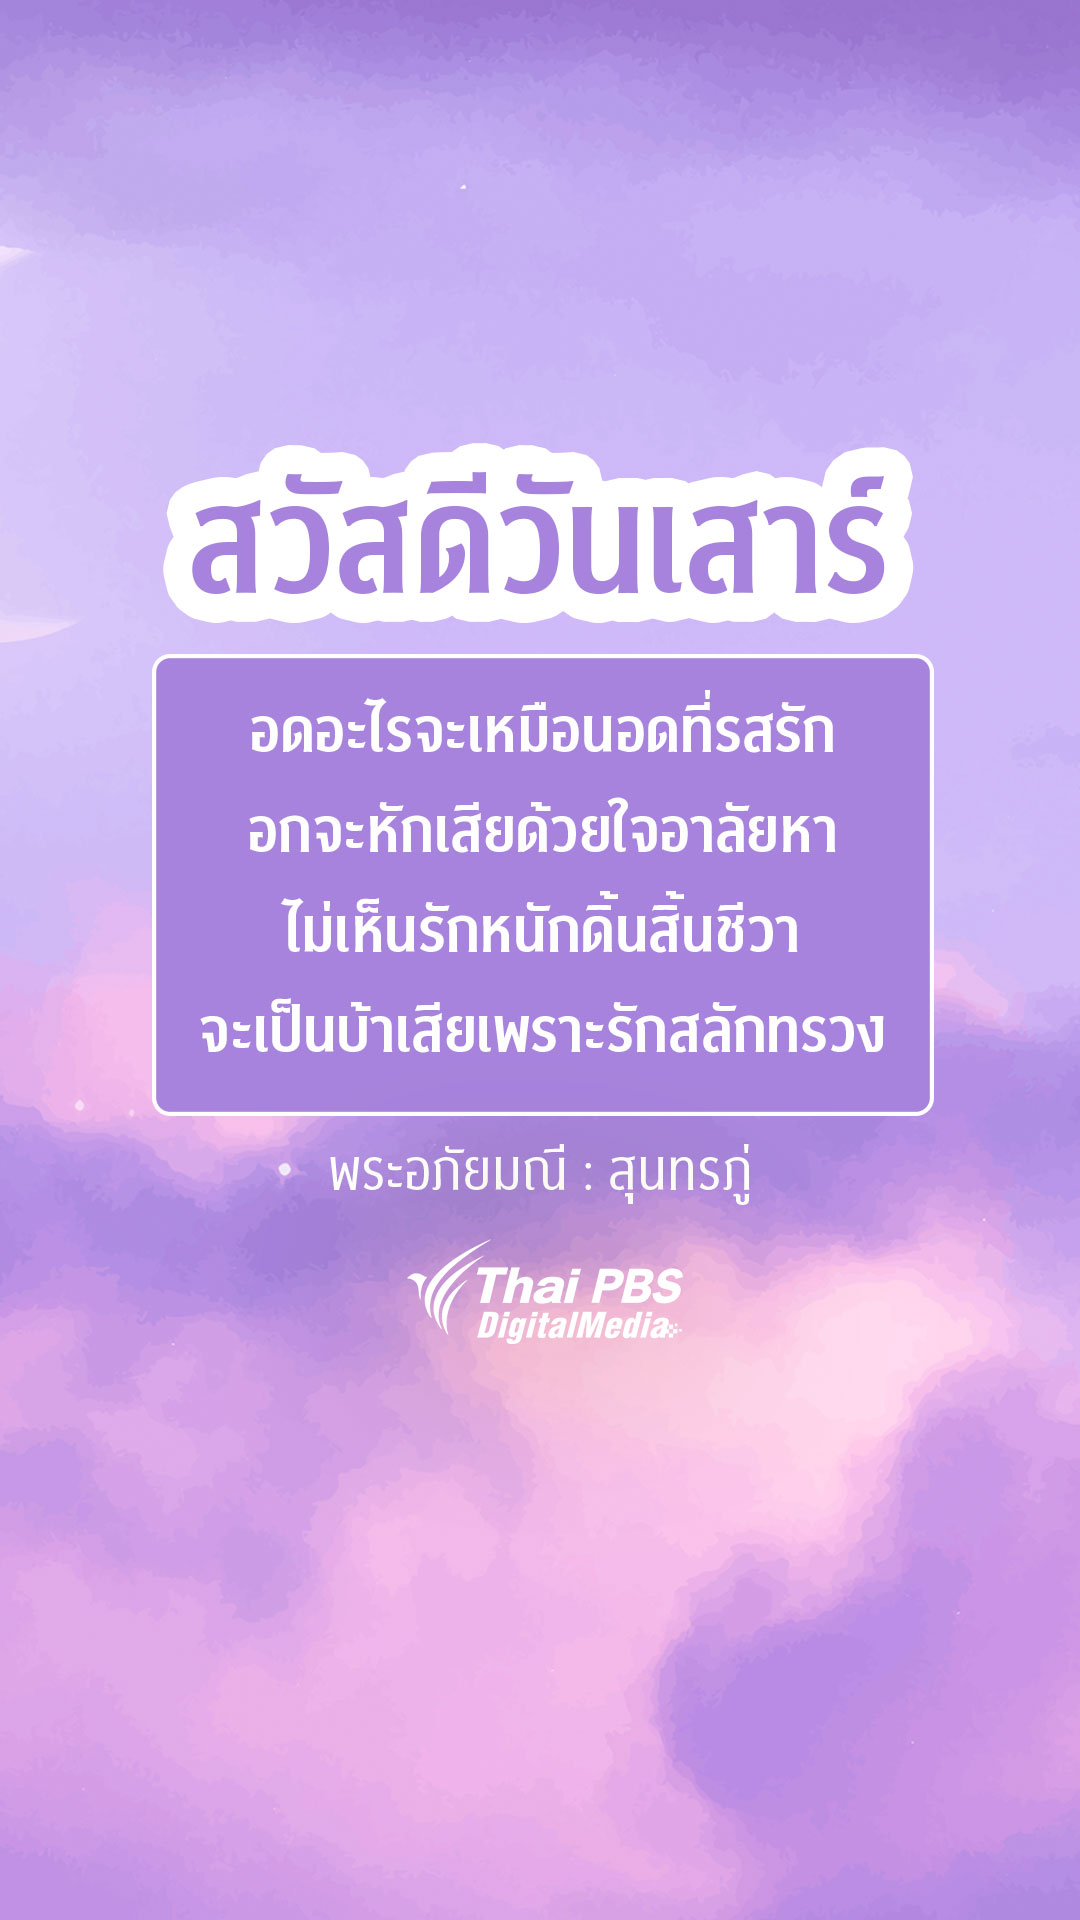 กลอนความรักจากวรรณคดี - Thai Pbs สวัสดีทุกสีวัน